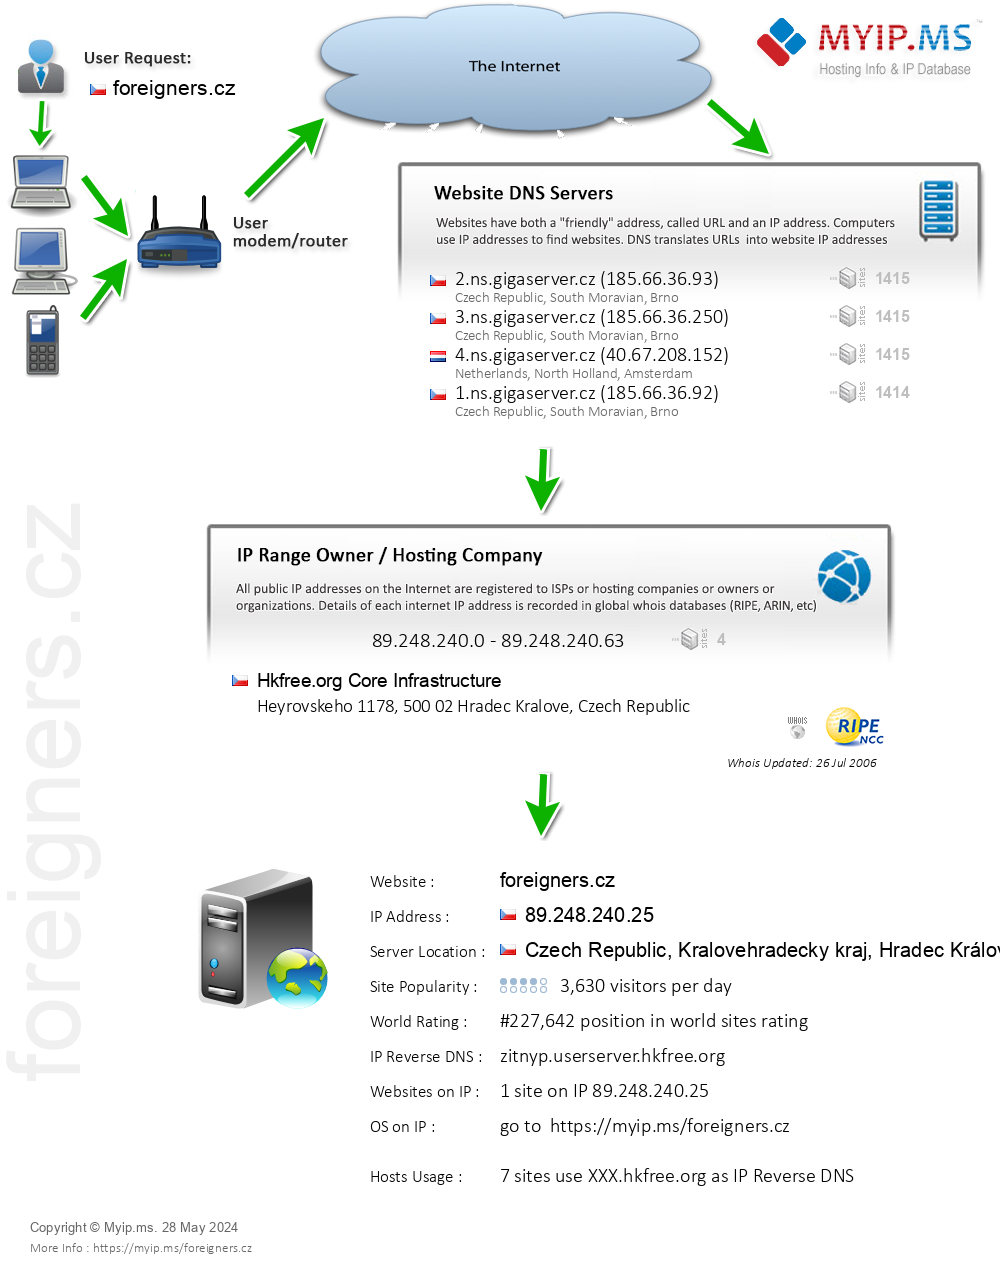 Foreigners.cz - Website Hosting Visual IP Diagram